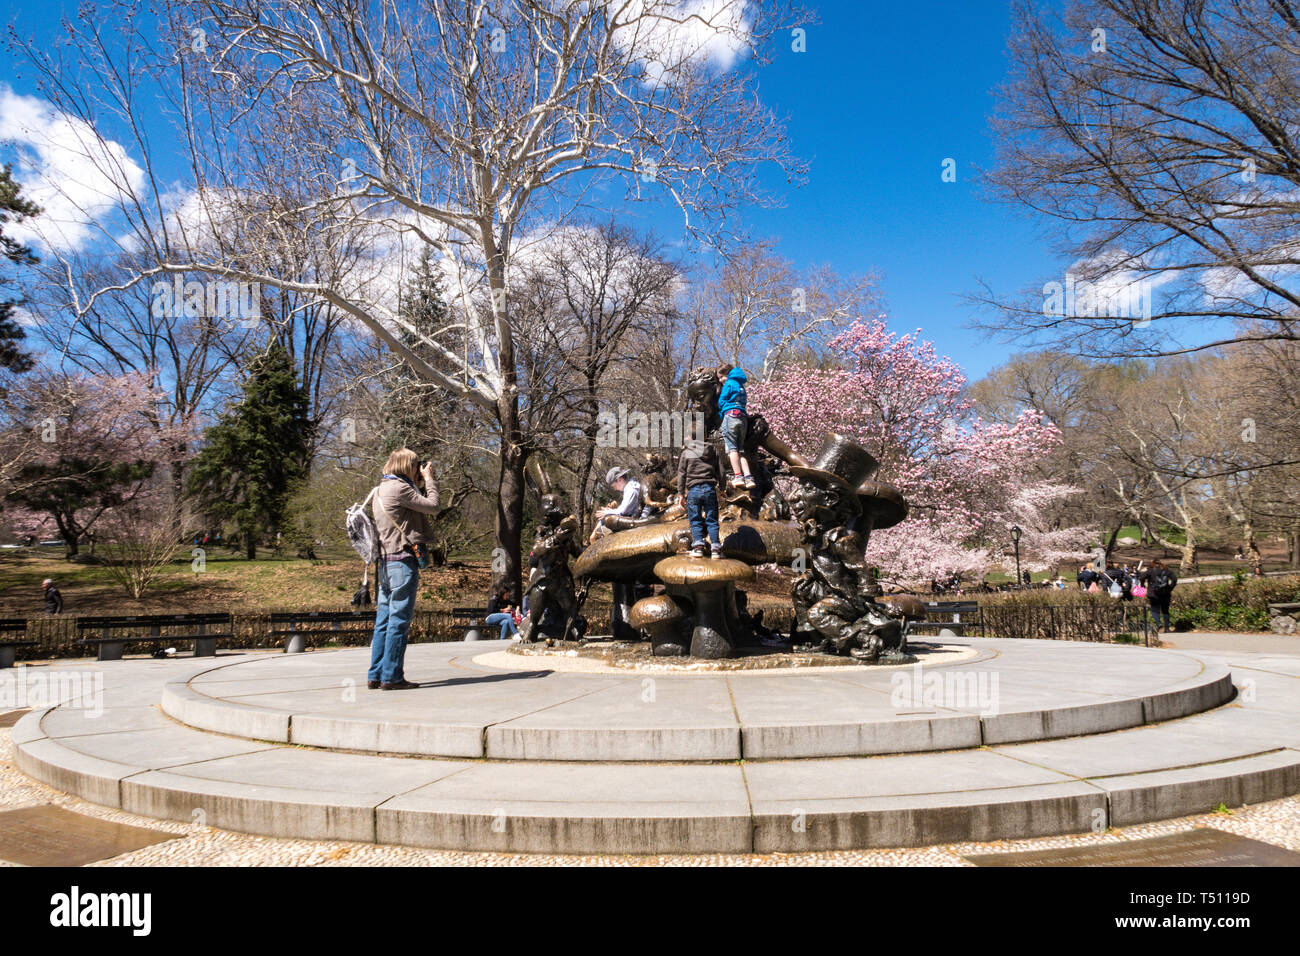 Alice nel Paese delle Meraviglie scultura è incorniciato da alberi a molla, al Central Park di New York, Stati Uniti d'America Foto Stock